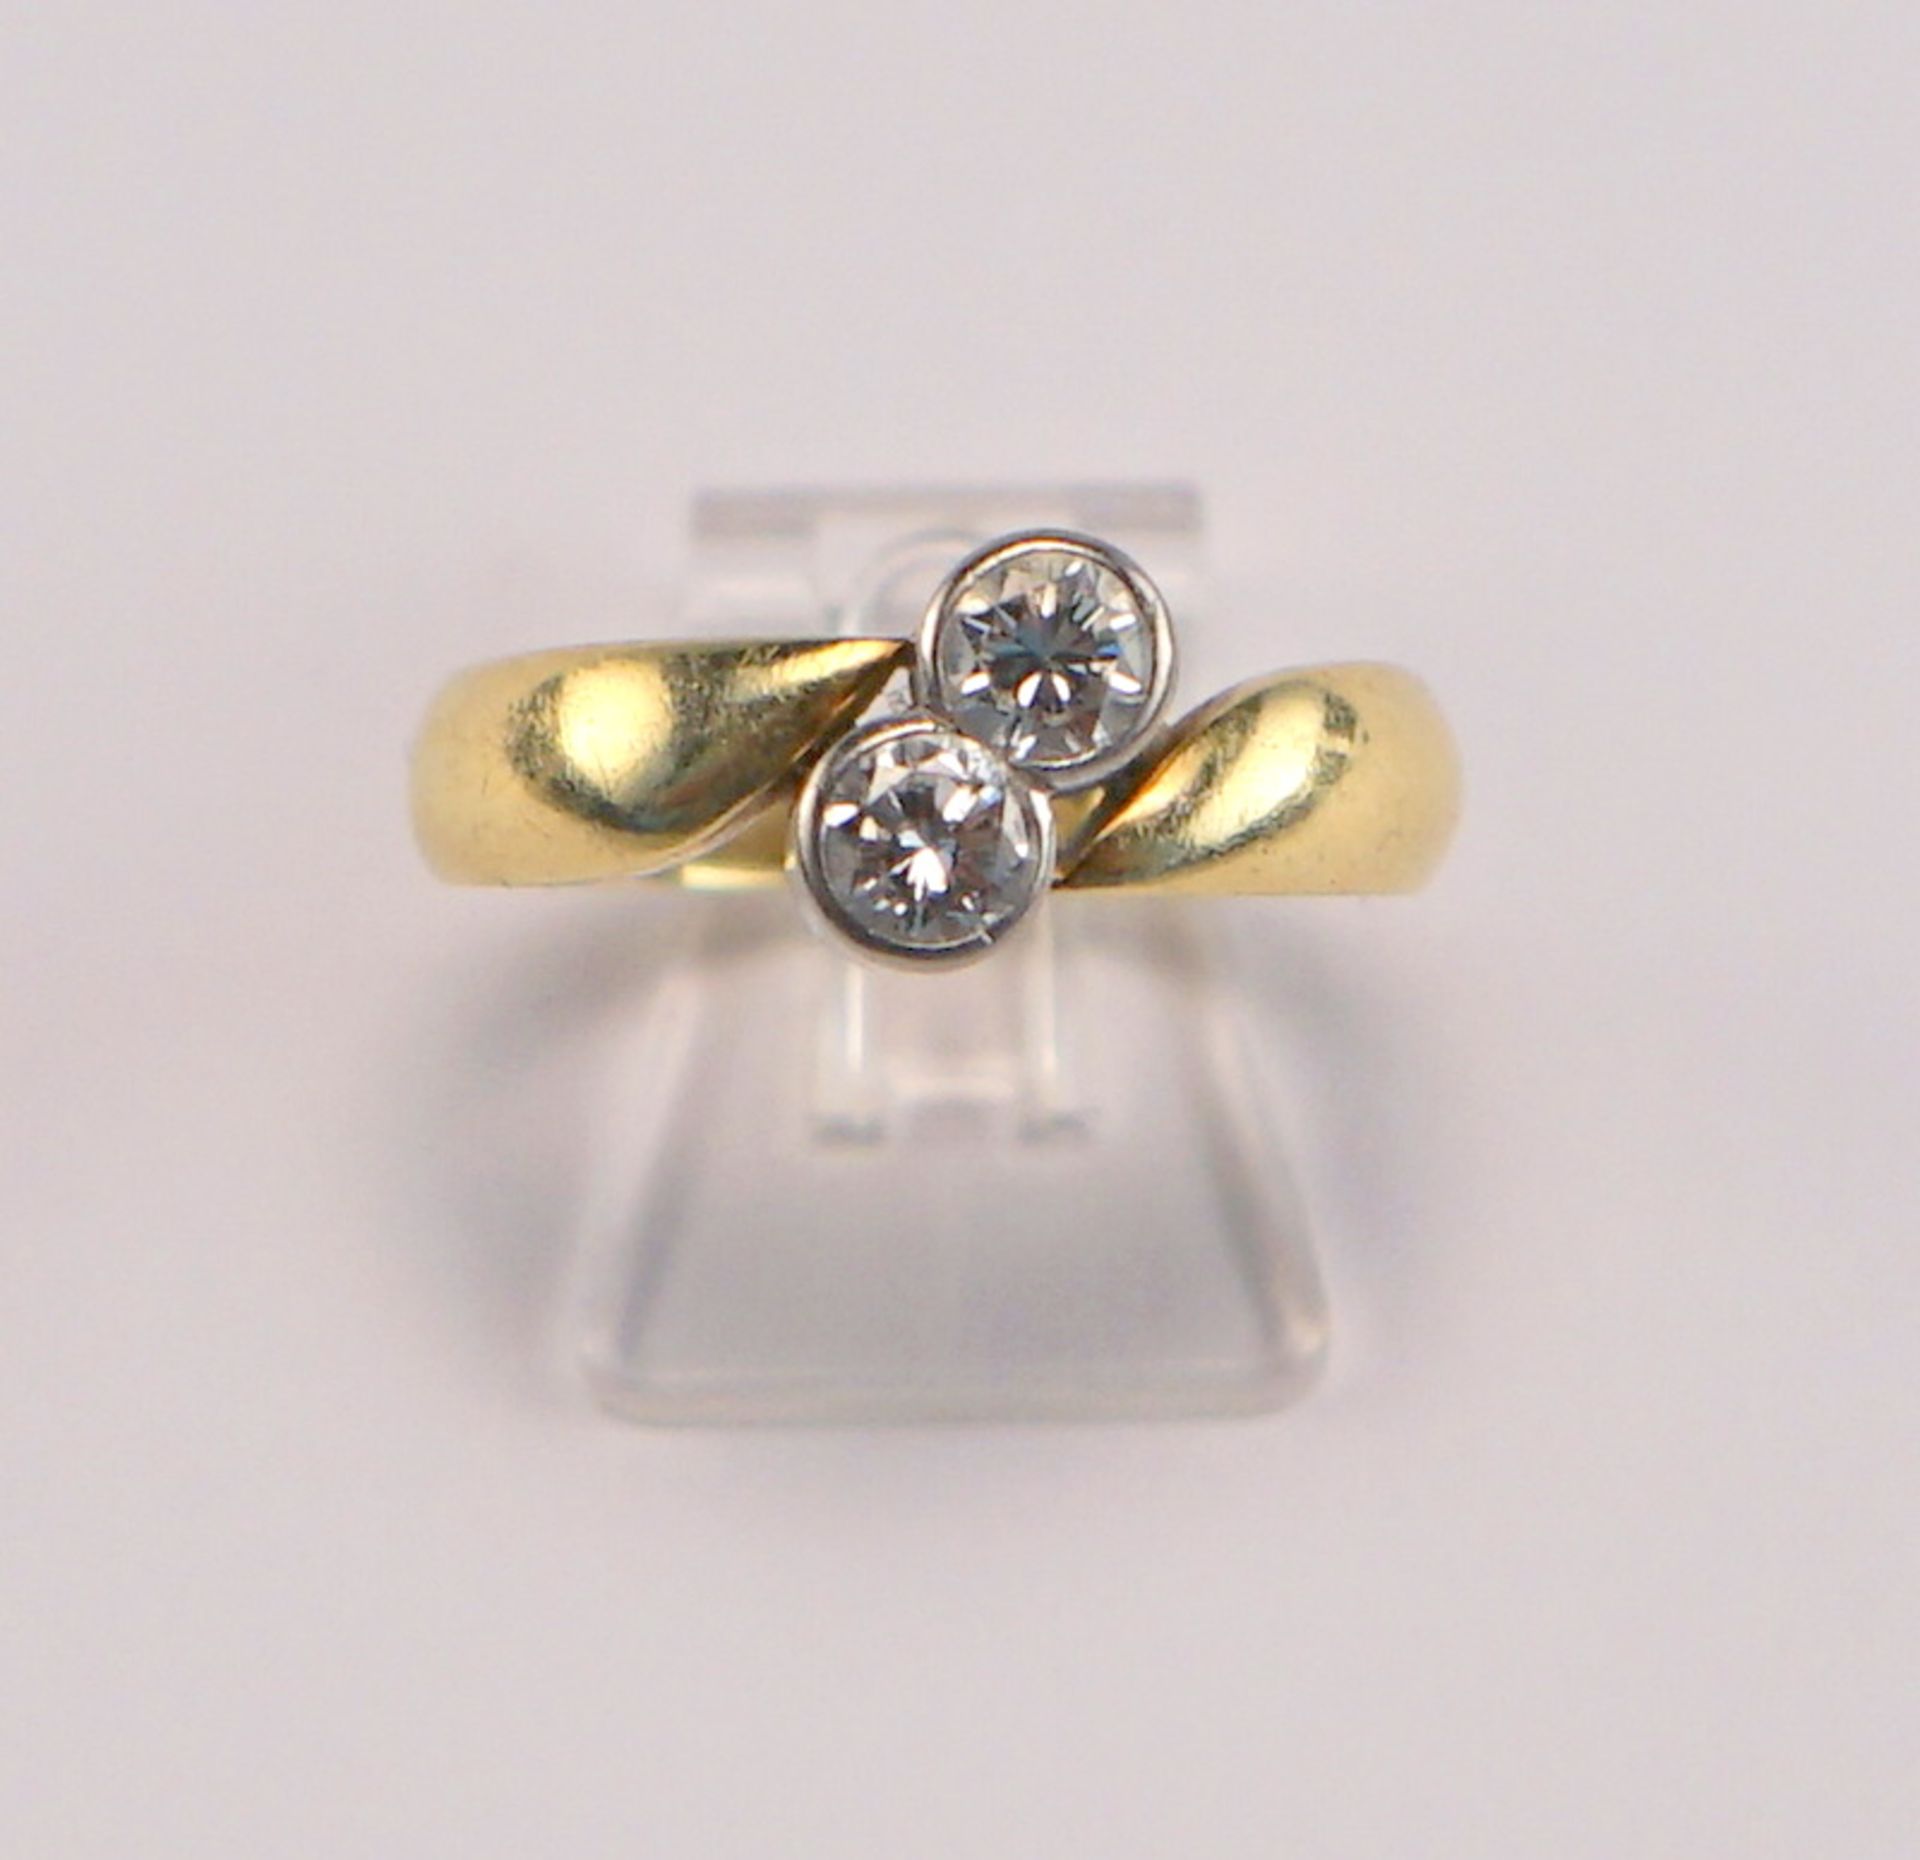 Toi-et-moi-Ring mit zus. 0,5ct Brillanten, 585 GG - Image 2 of 2